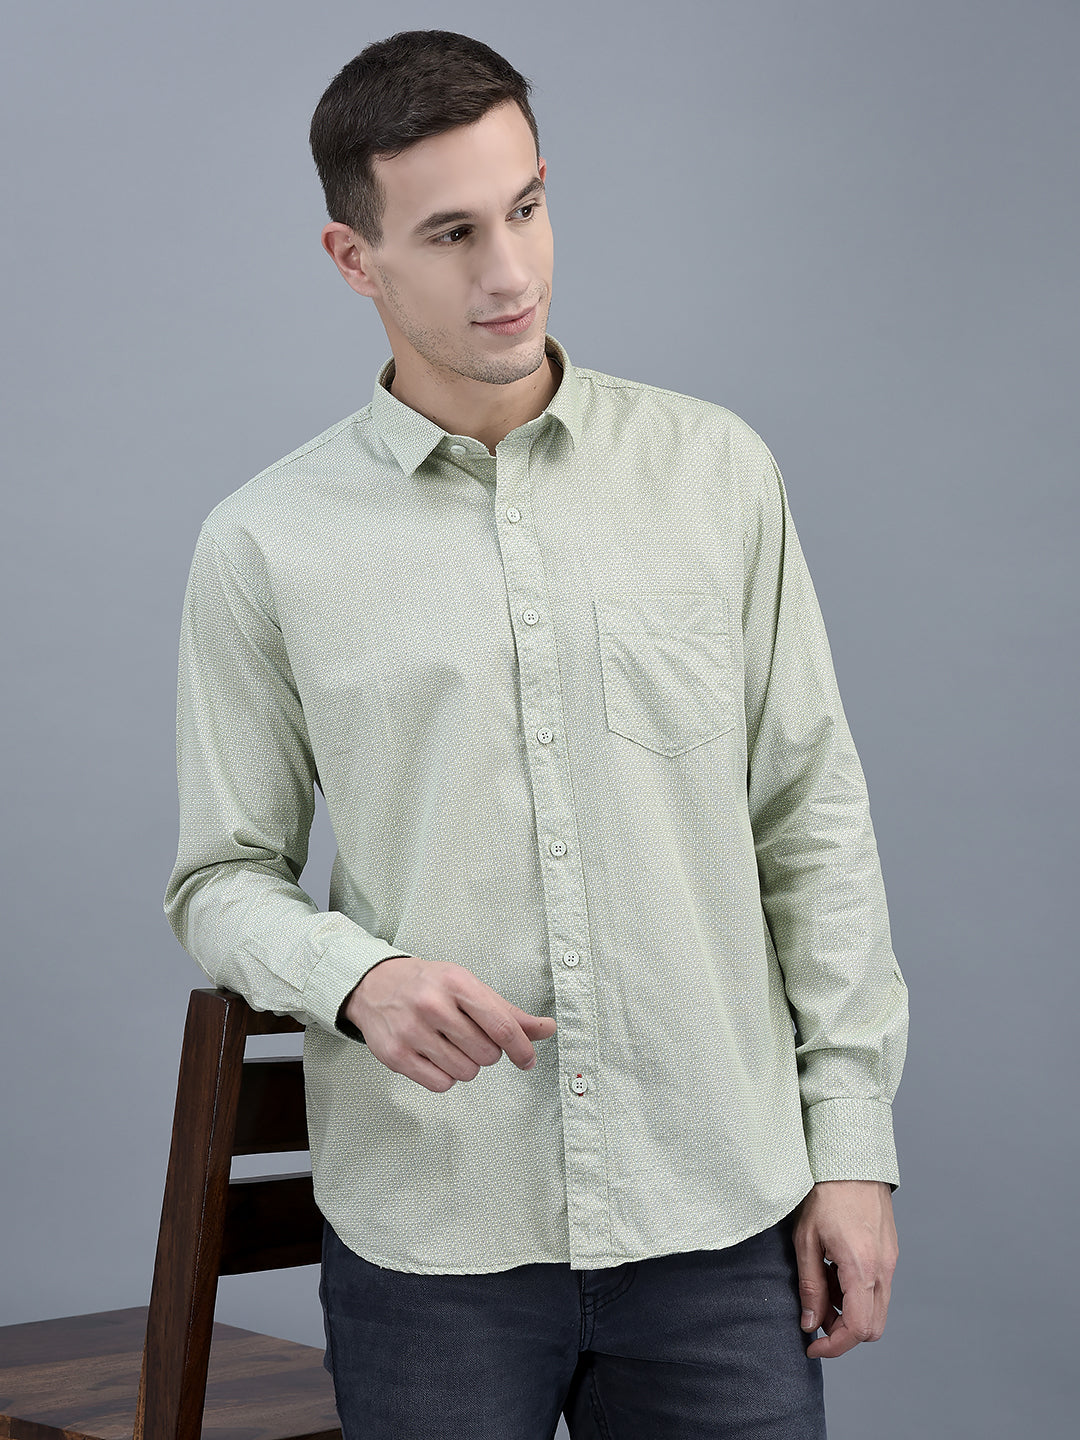 Cobb Green Printed Slim Fit Casual Shirt